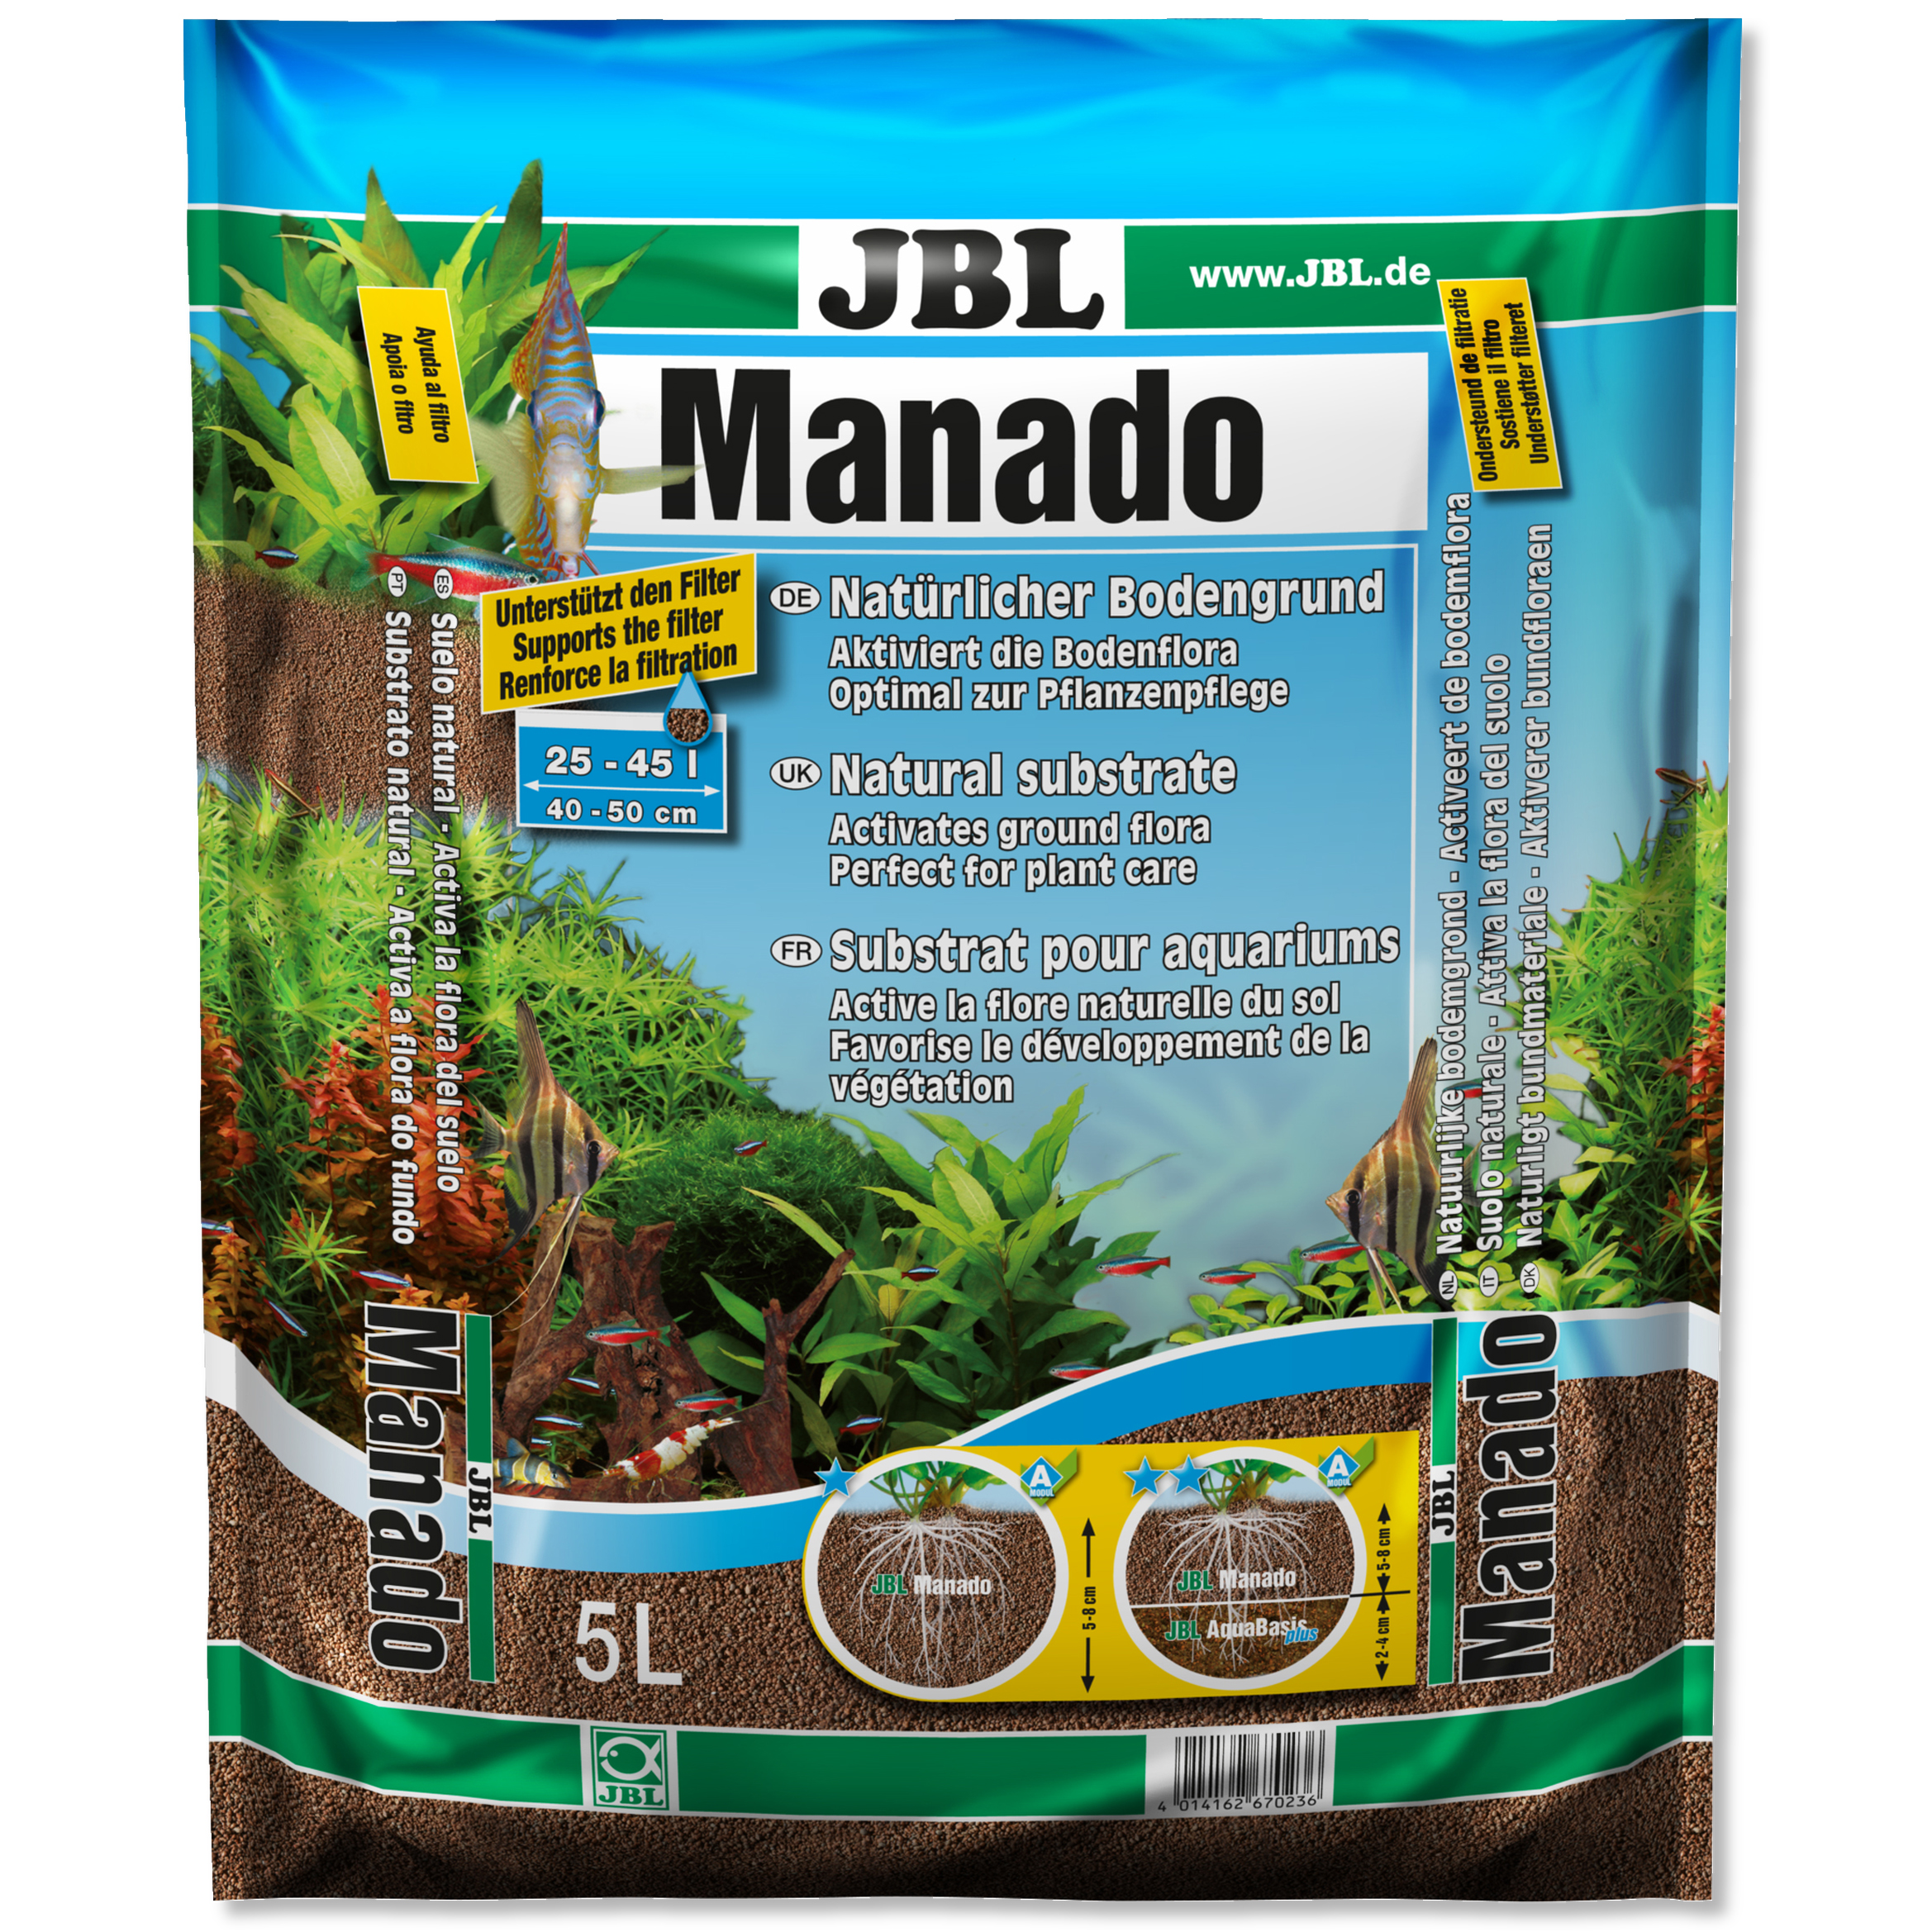 JBL Manado Natural Substrate Plant Growth Granule Root Soil Aquarium Fish  Tank